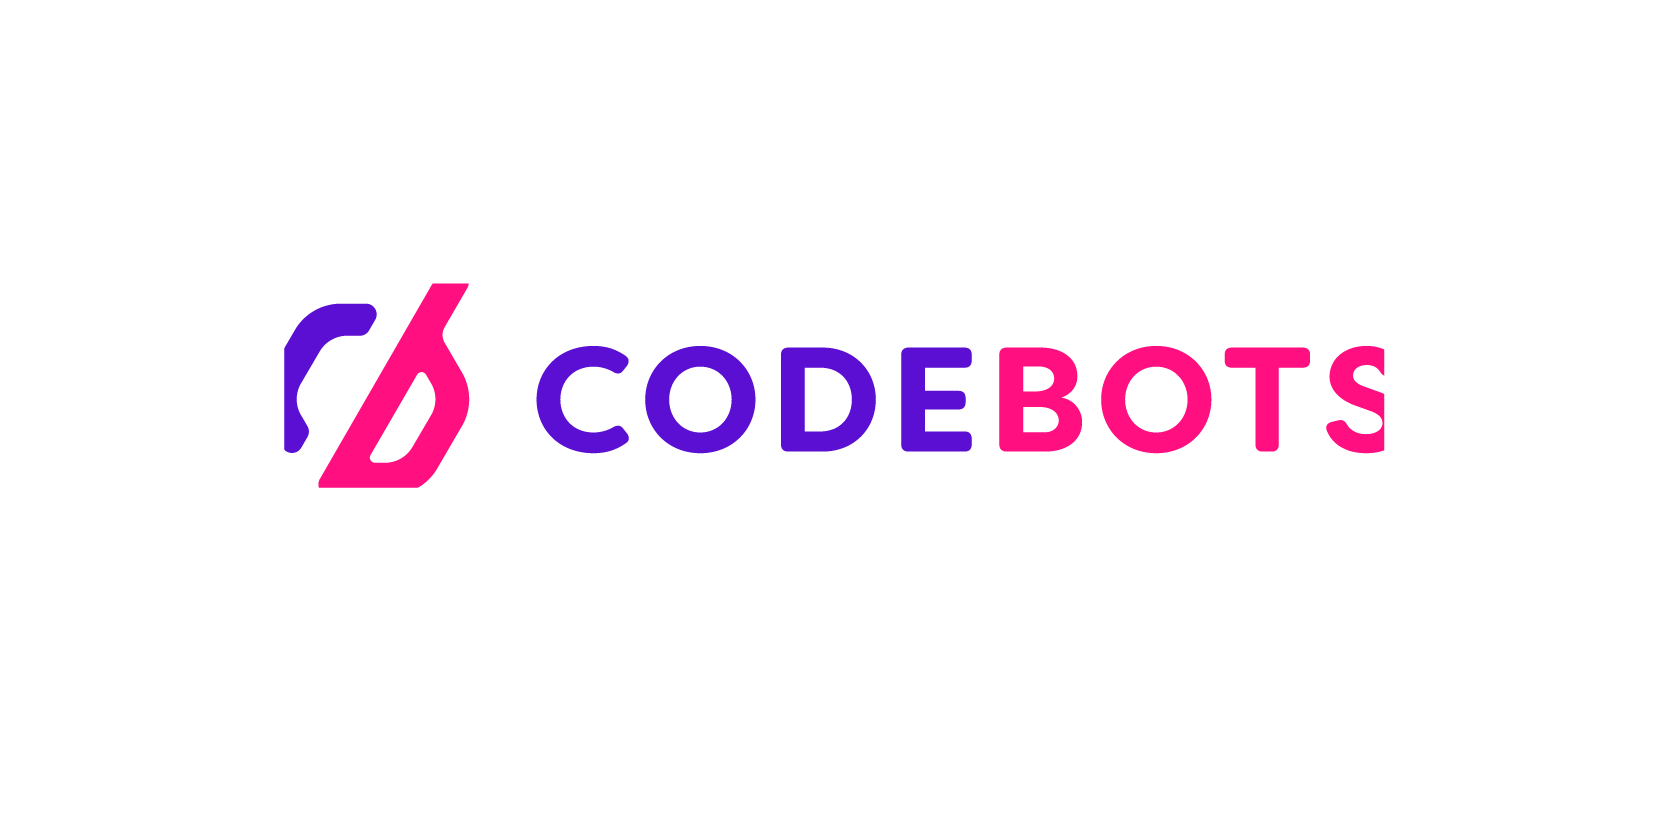 Codebots crop logo